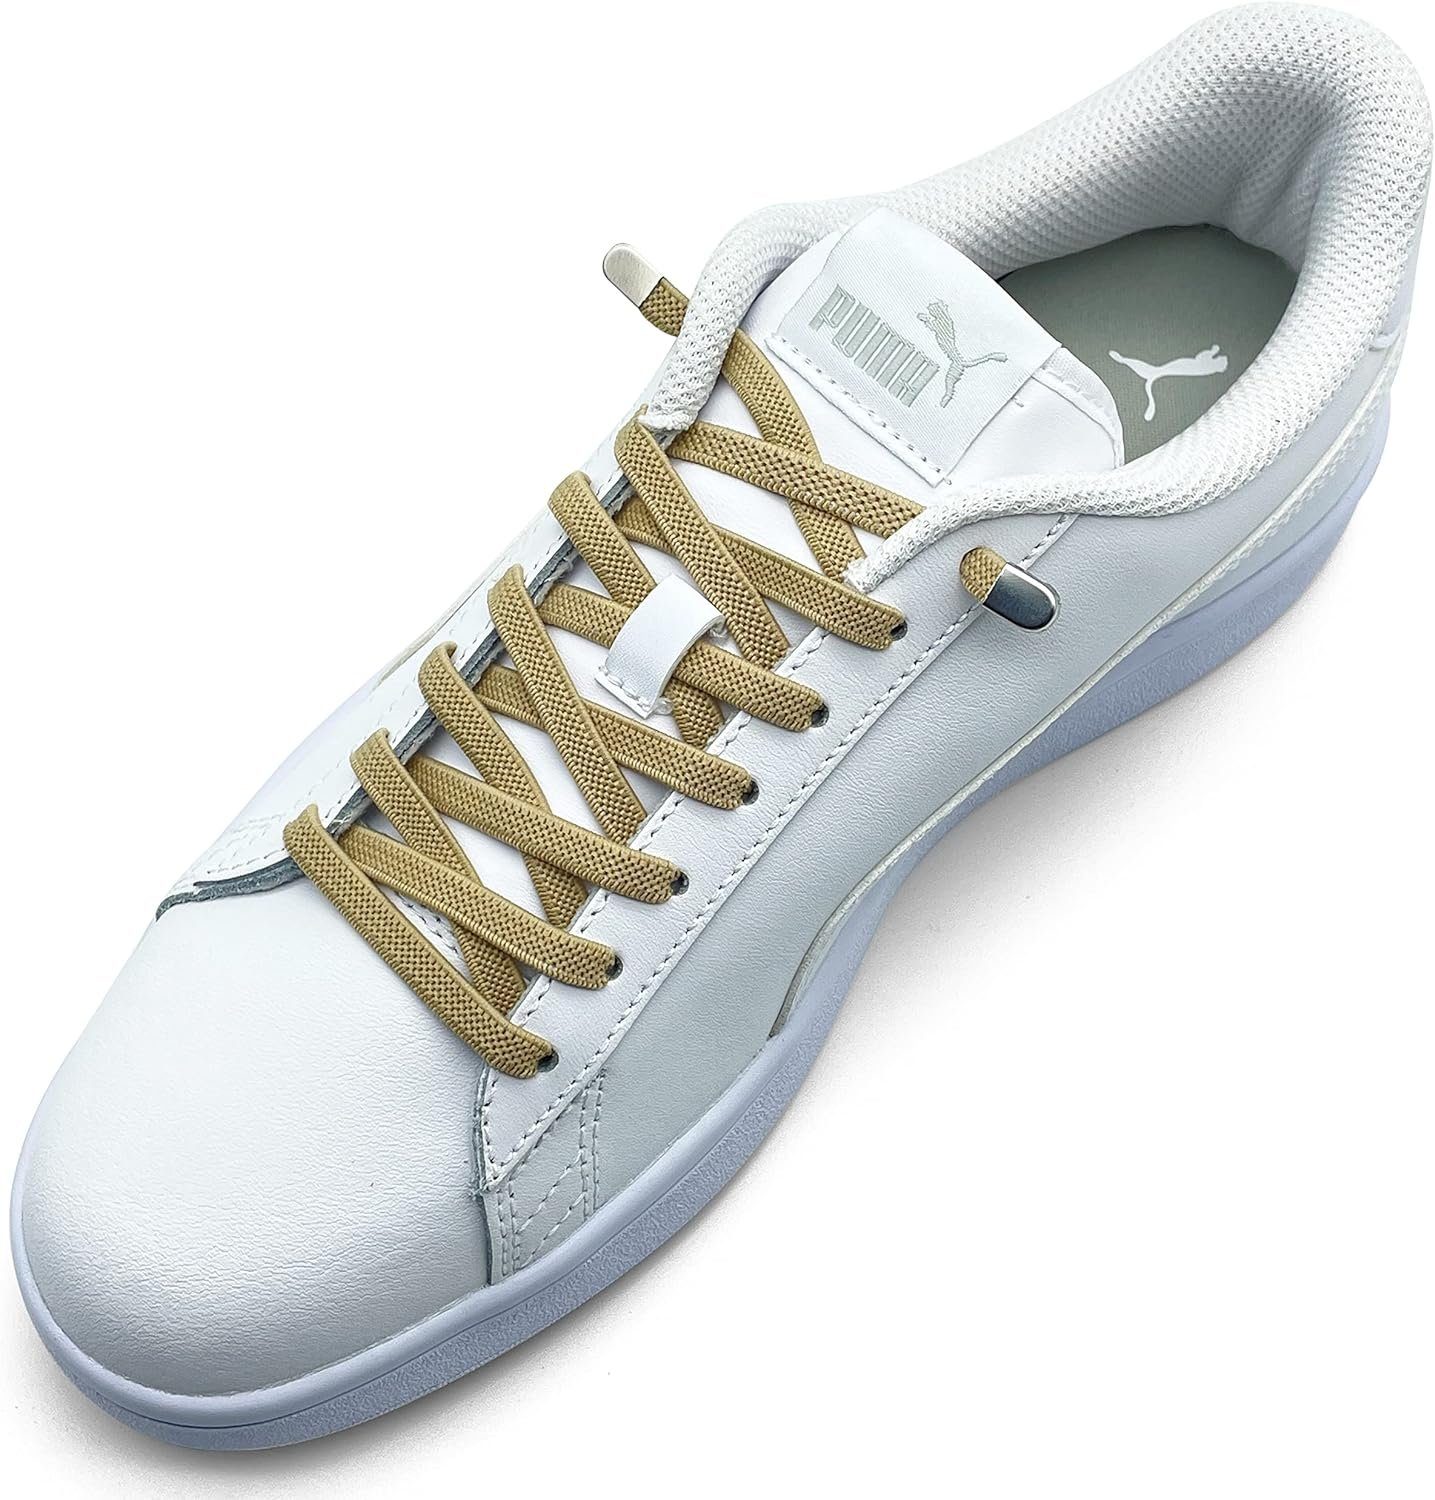 ELANOX Schnürsenkel 4 Stück für 2 Paar Schuhe elastische Schnürsenkel mit Clips, inkl. Enden (Clips) - 8 St. in silber khaki | Schnürsenkel